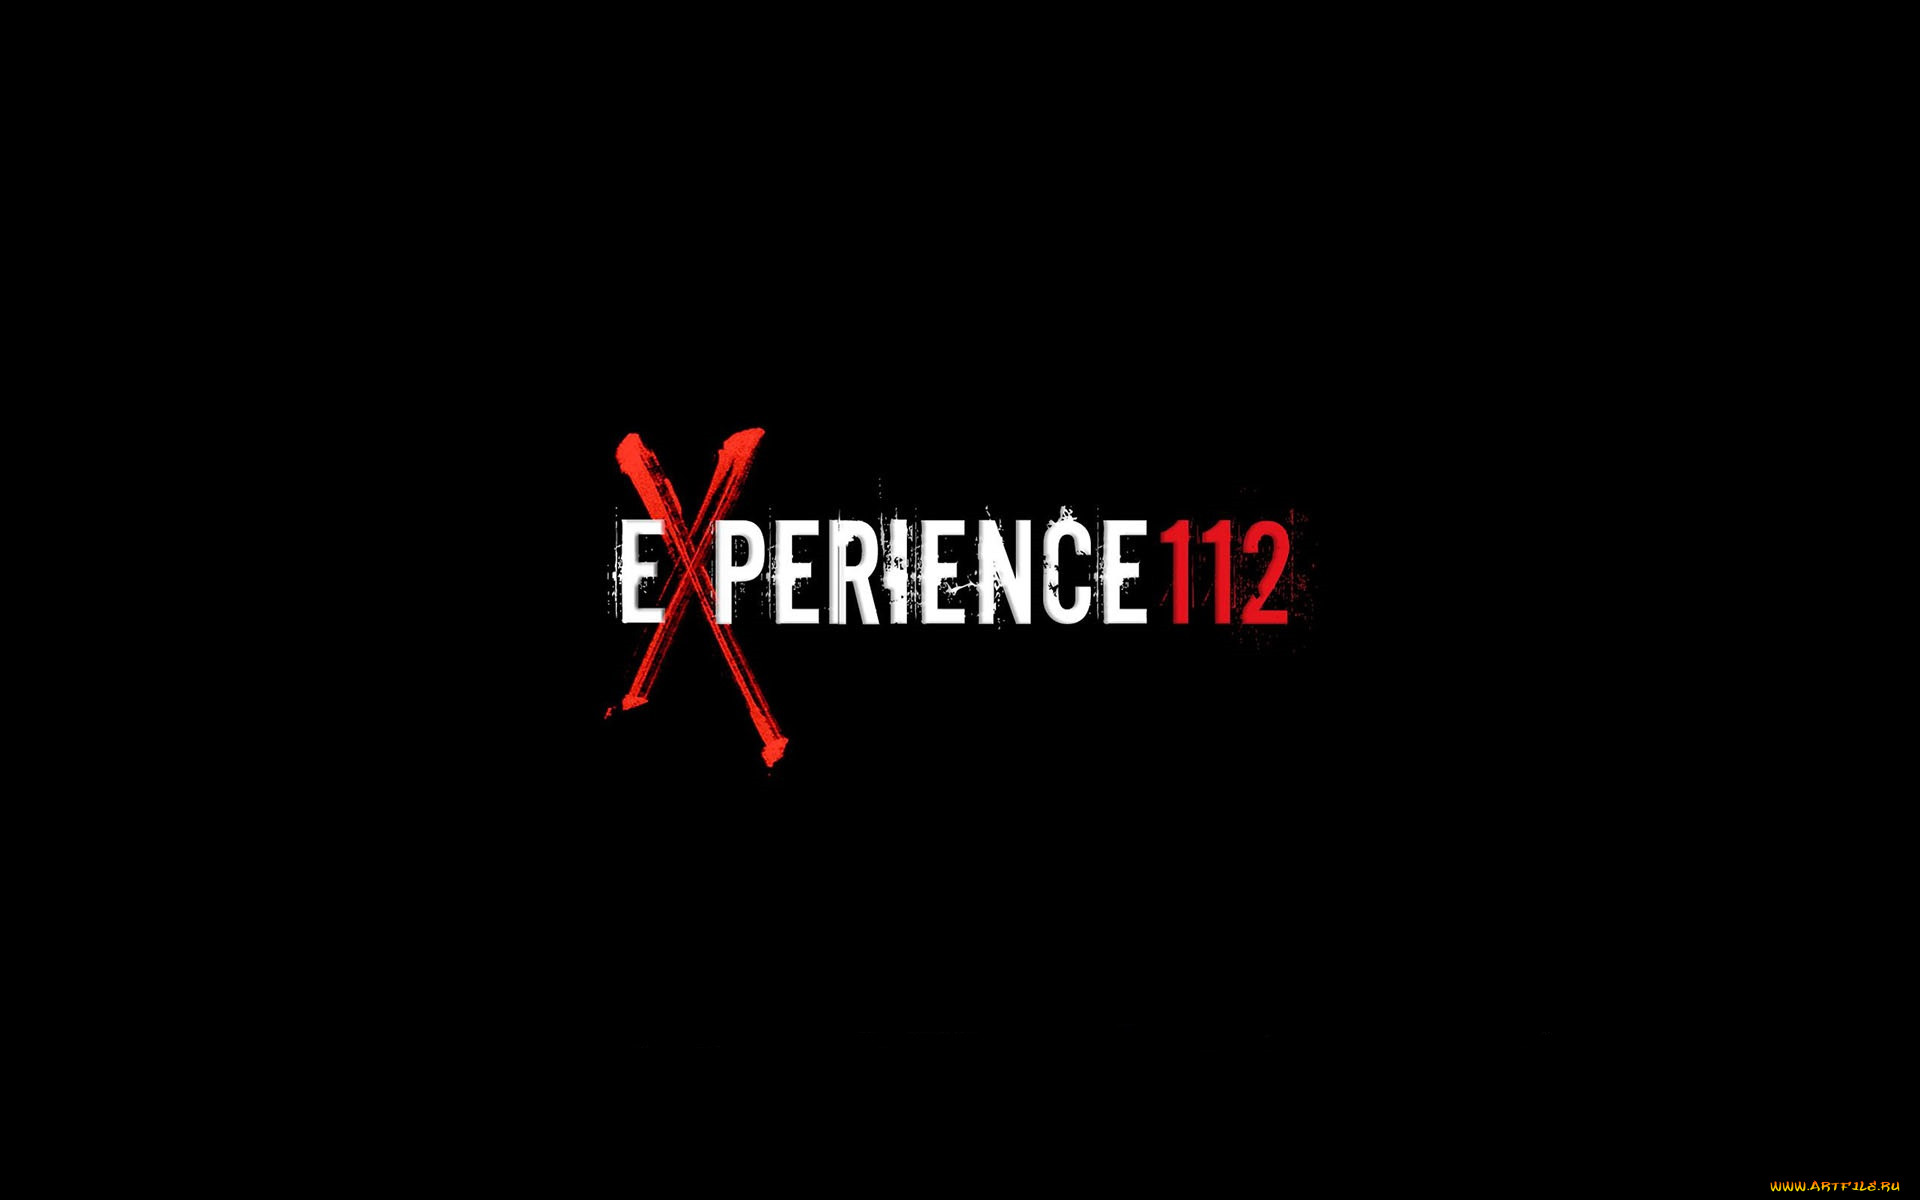  , experiment 112, 